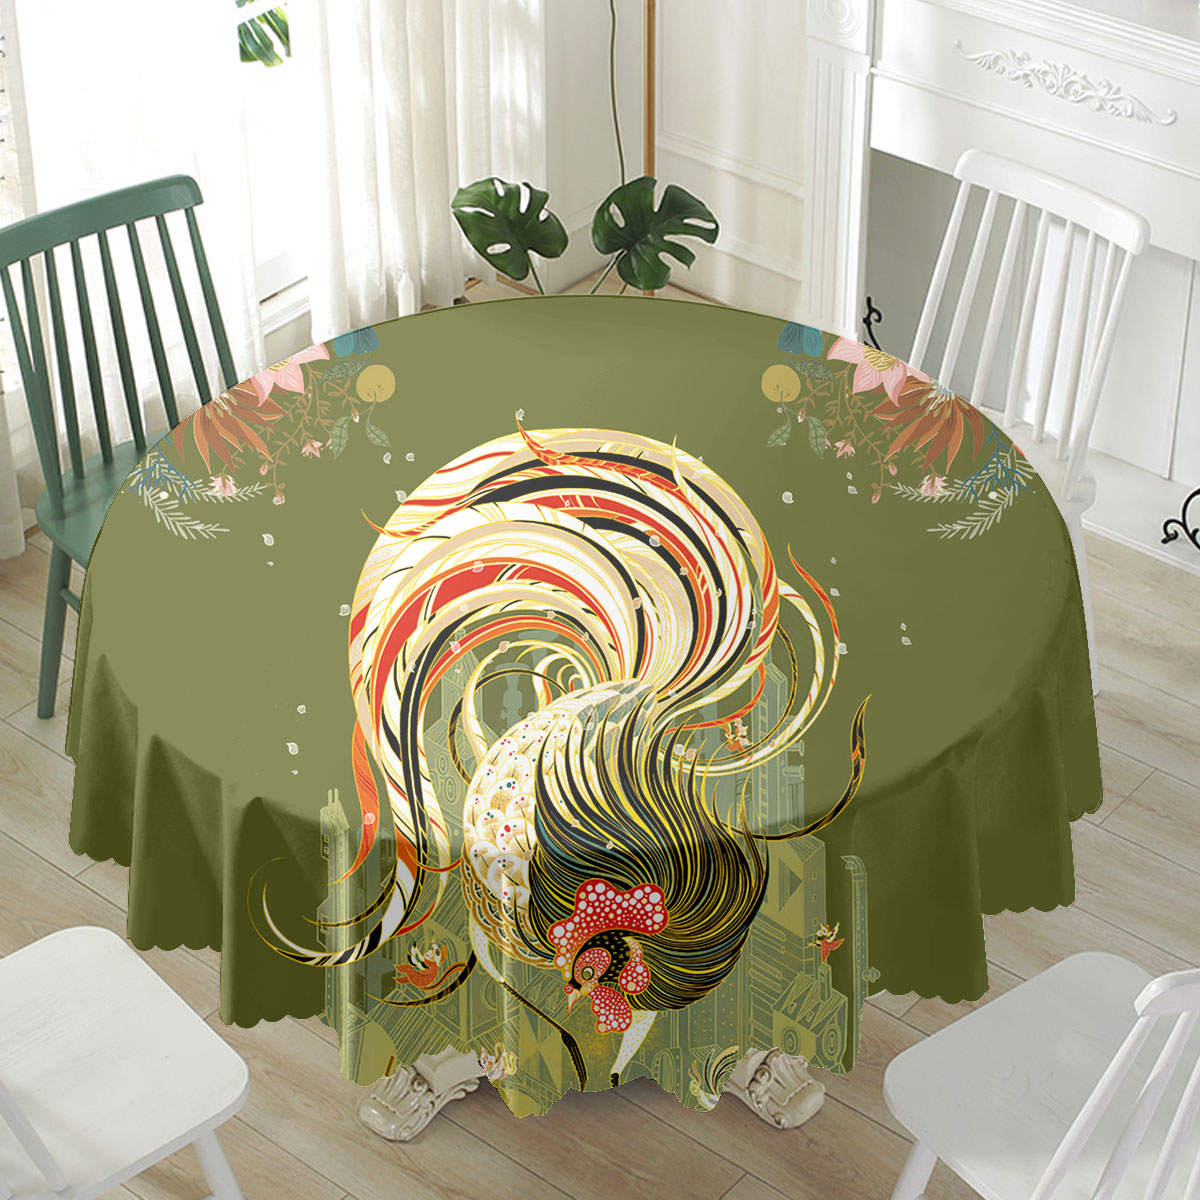 Chicken Pattern 9 Fabulous Waterproof Tablecloth